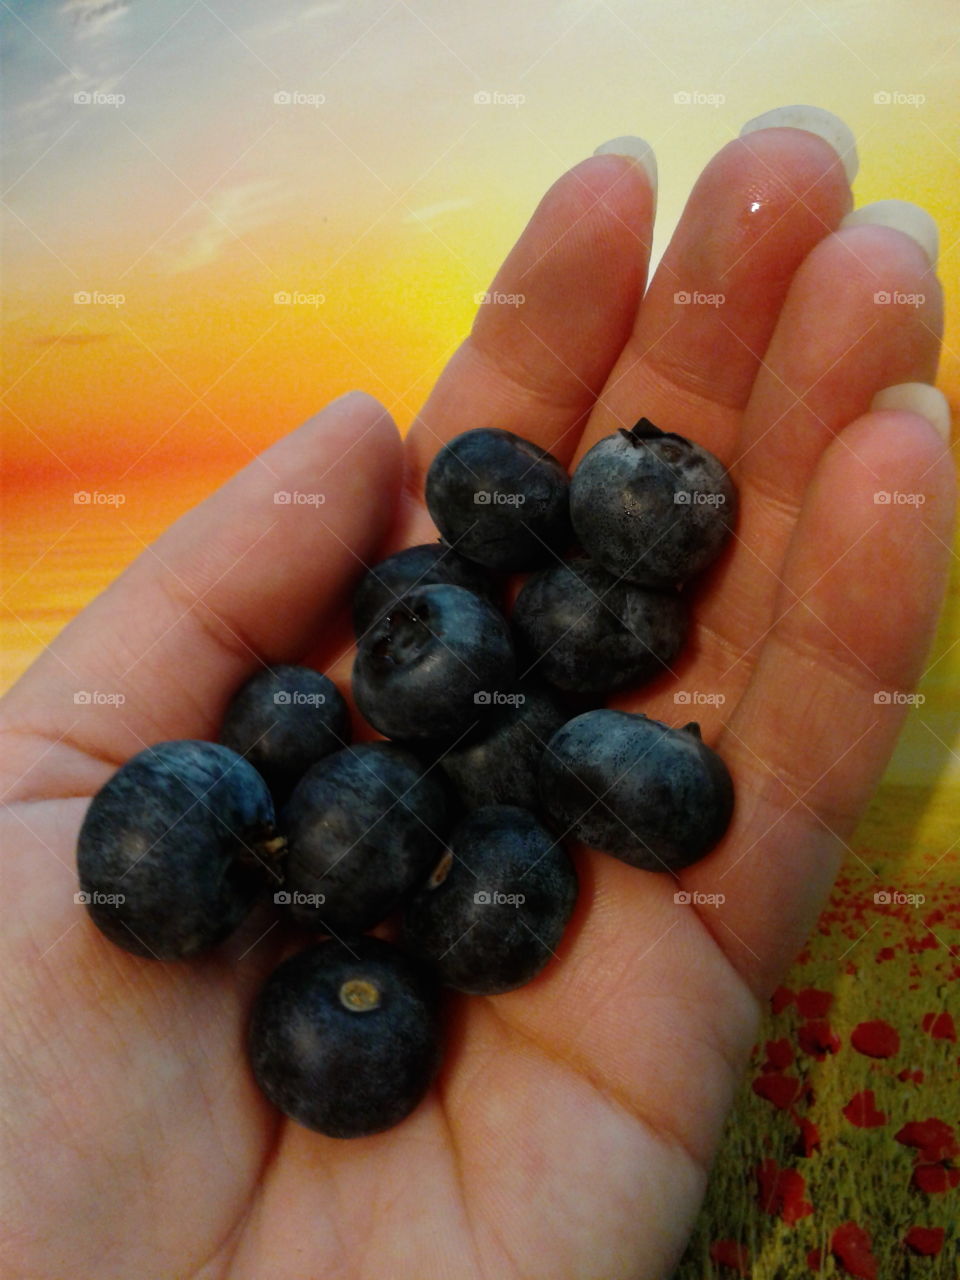 yum blueberries